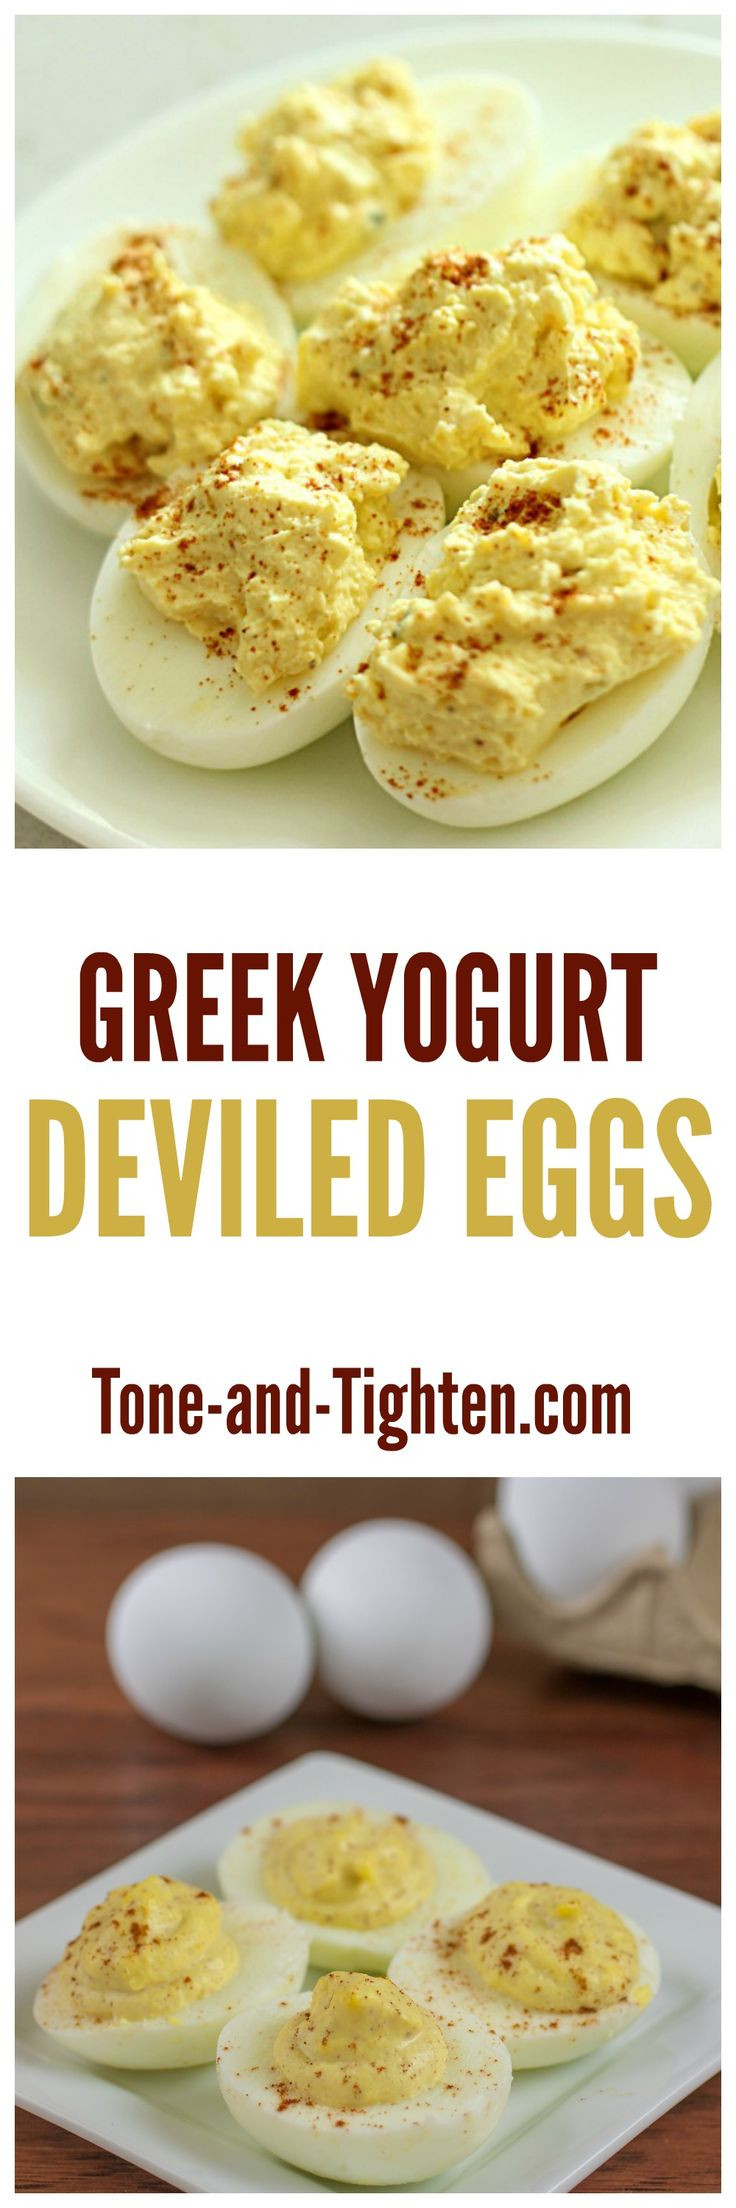 Diabetic Easter Recipes
 Best 25 Easter deviled eggs ideas on Pinterest